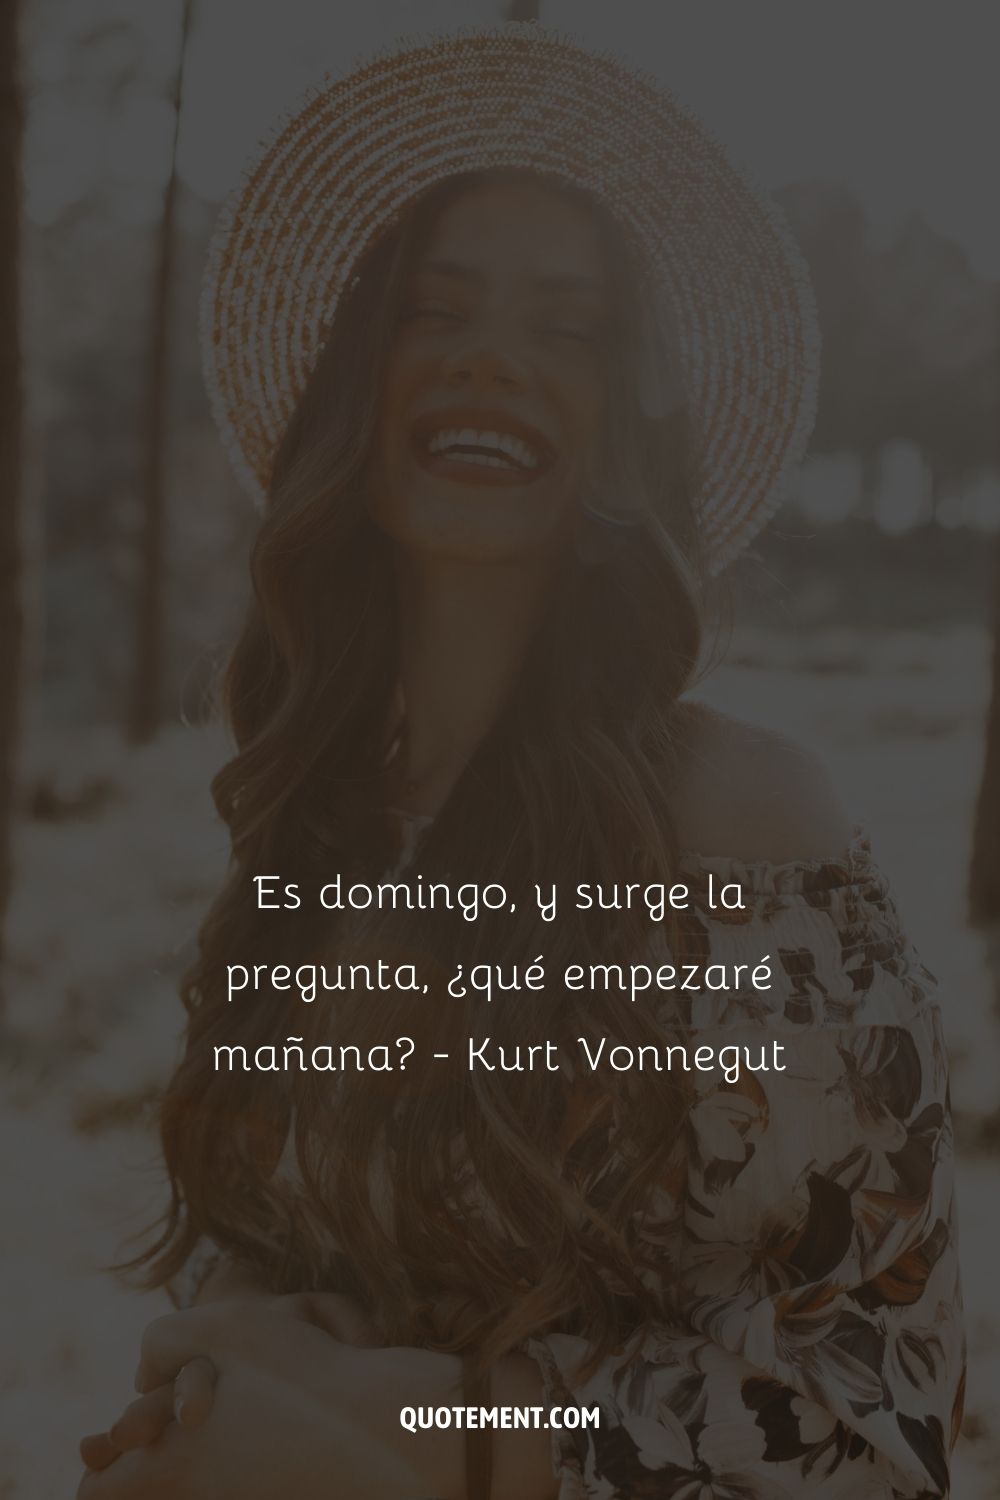 Hoy es domingo, y surge la pregunta: ¿qué empezaré mañana? - Kurt Vonnegut